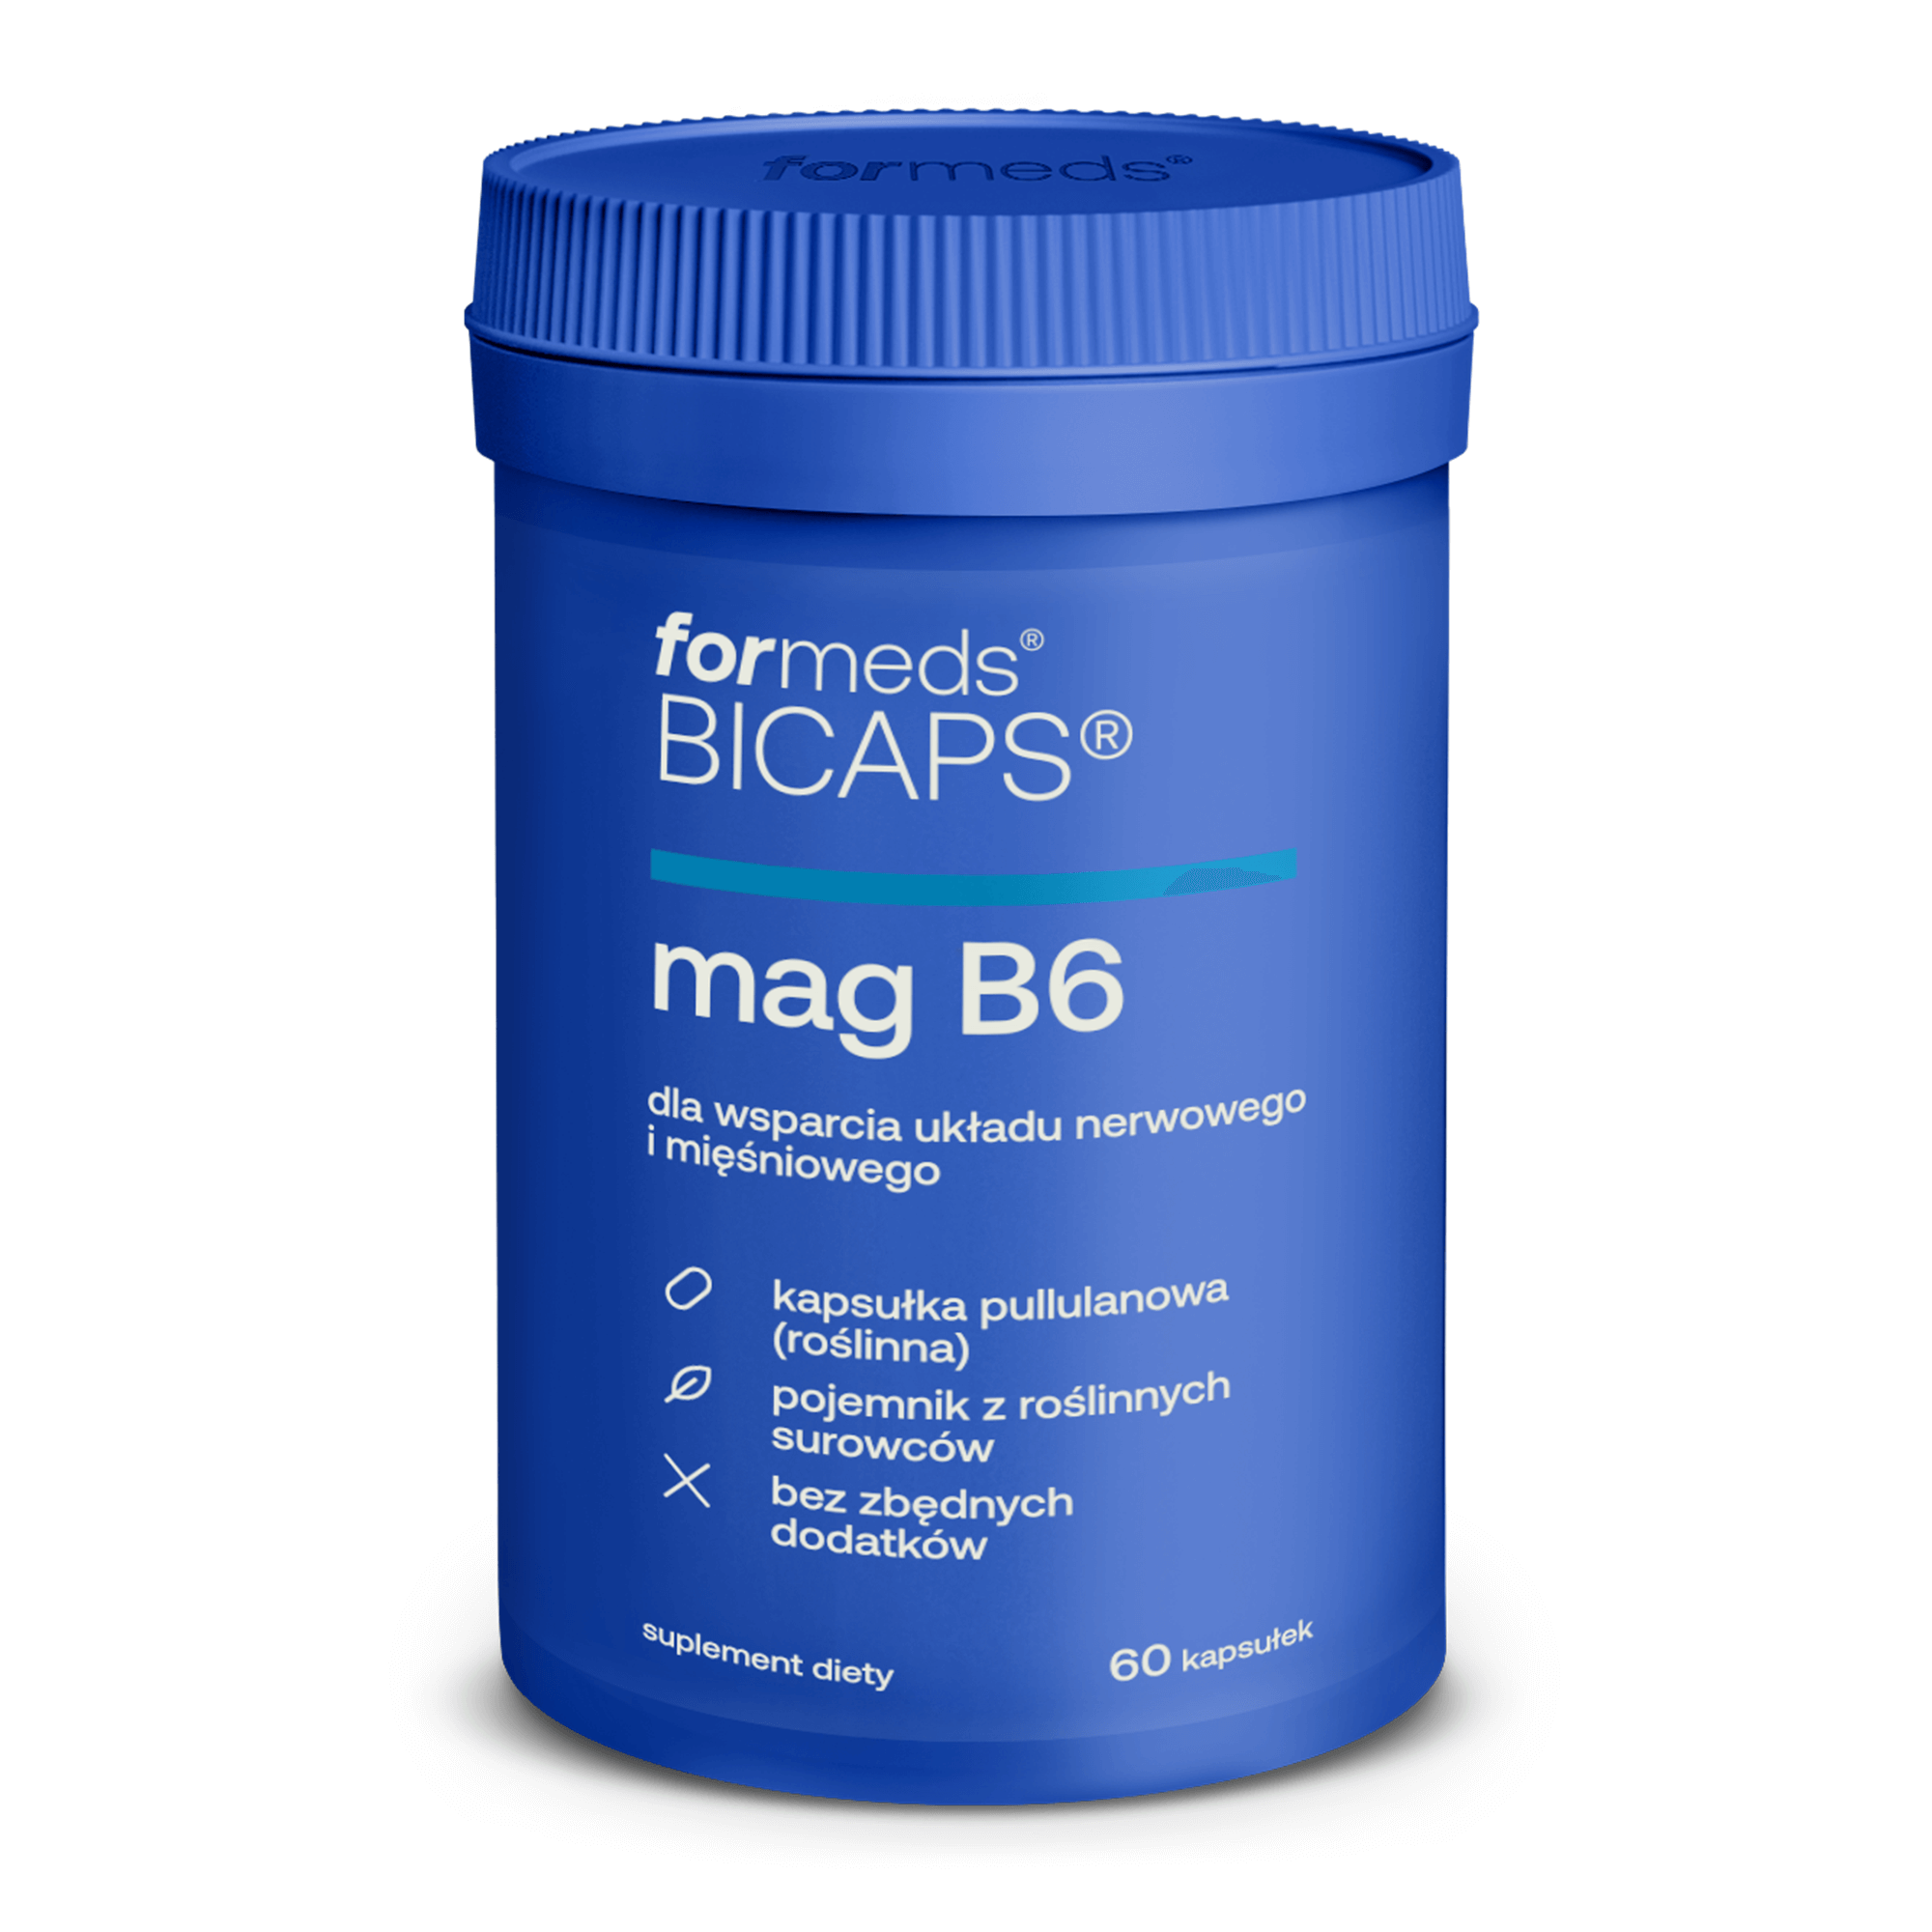 BICAPS MAG B6 Magnez i Witamina B6 60 kapsułek - ForMeds